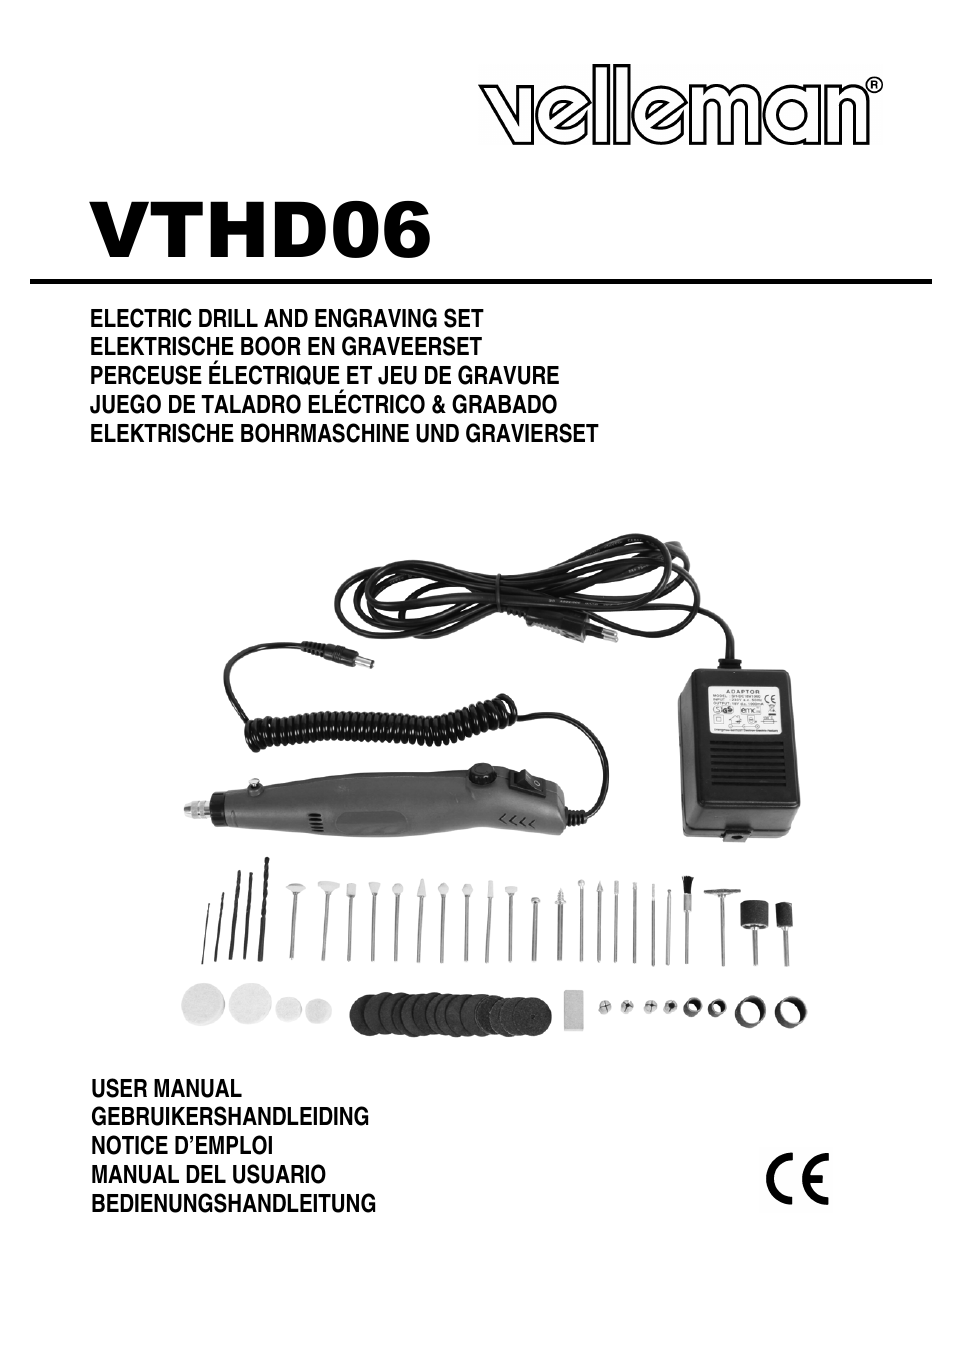 VTHD06